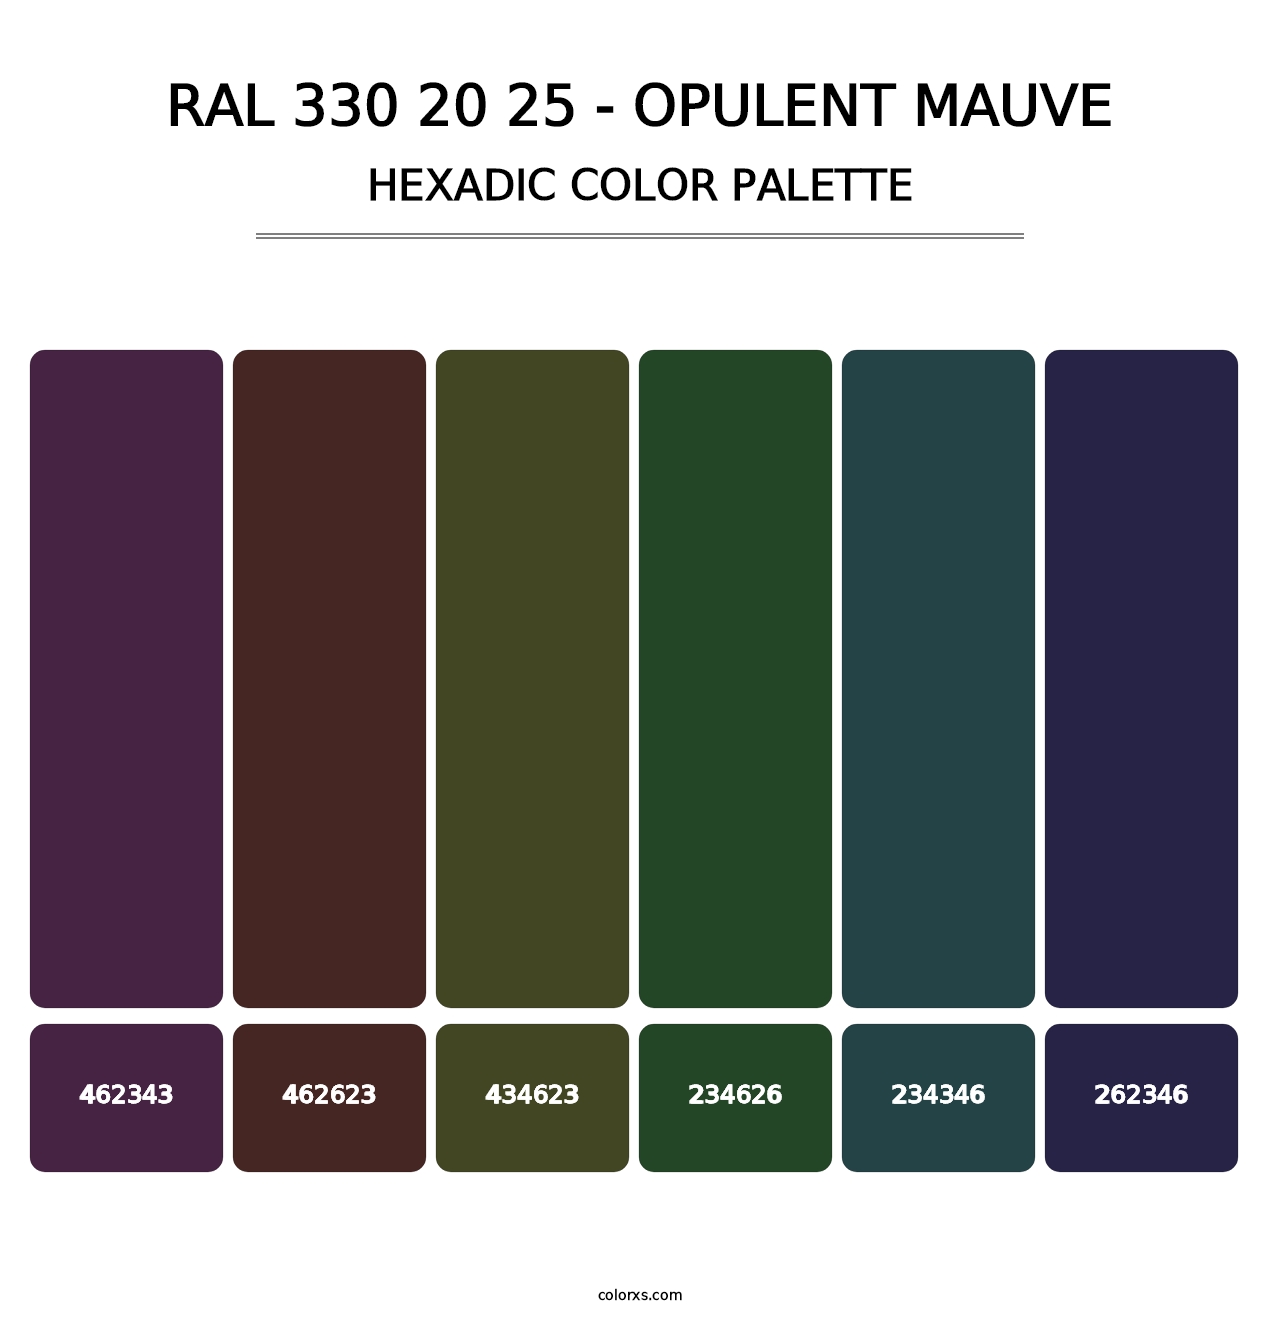 RAL 330 20 25 - Opulent Mauve - Hexadic Color Palette